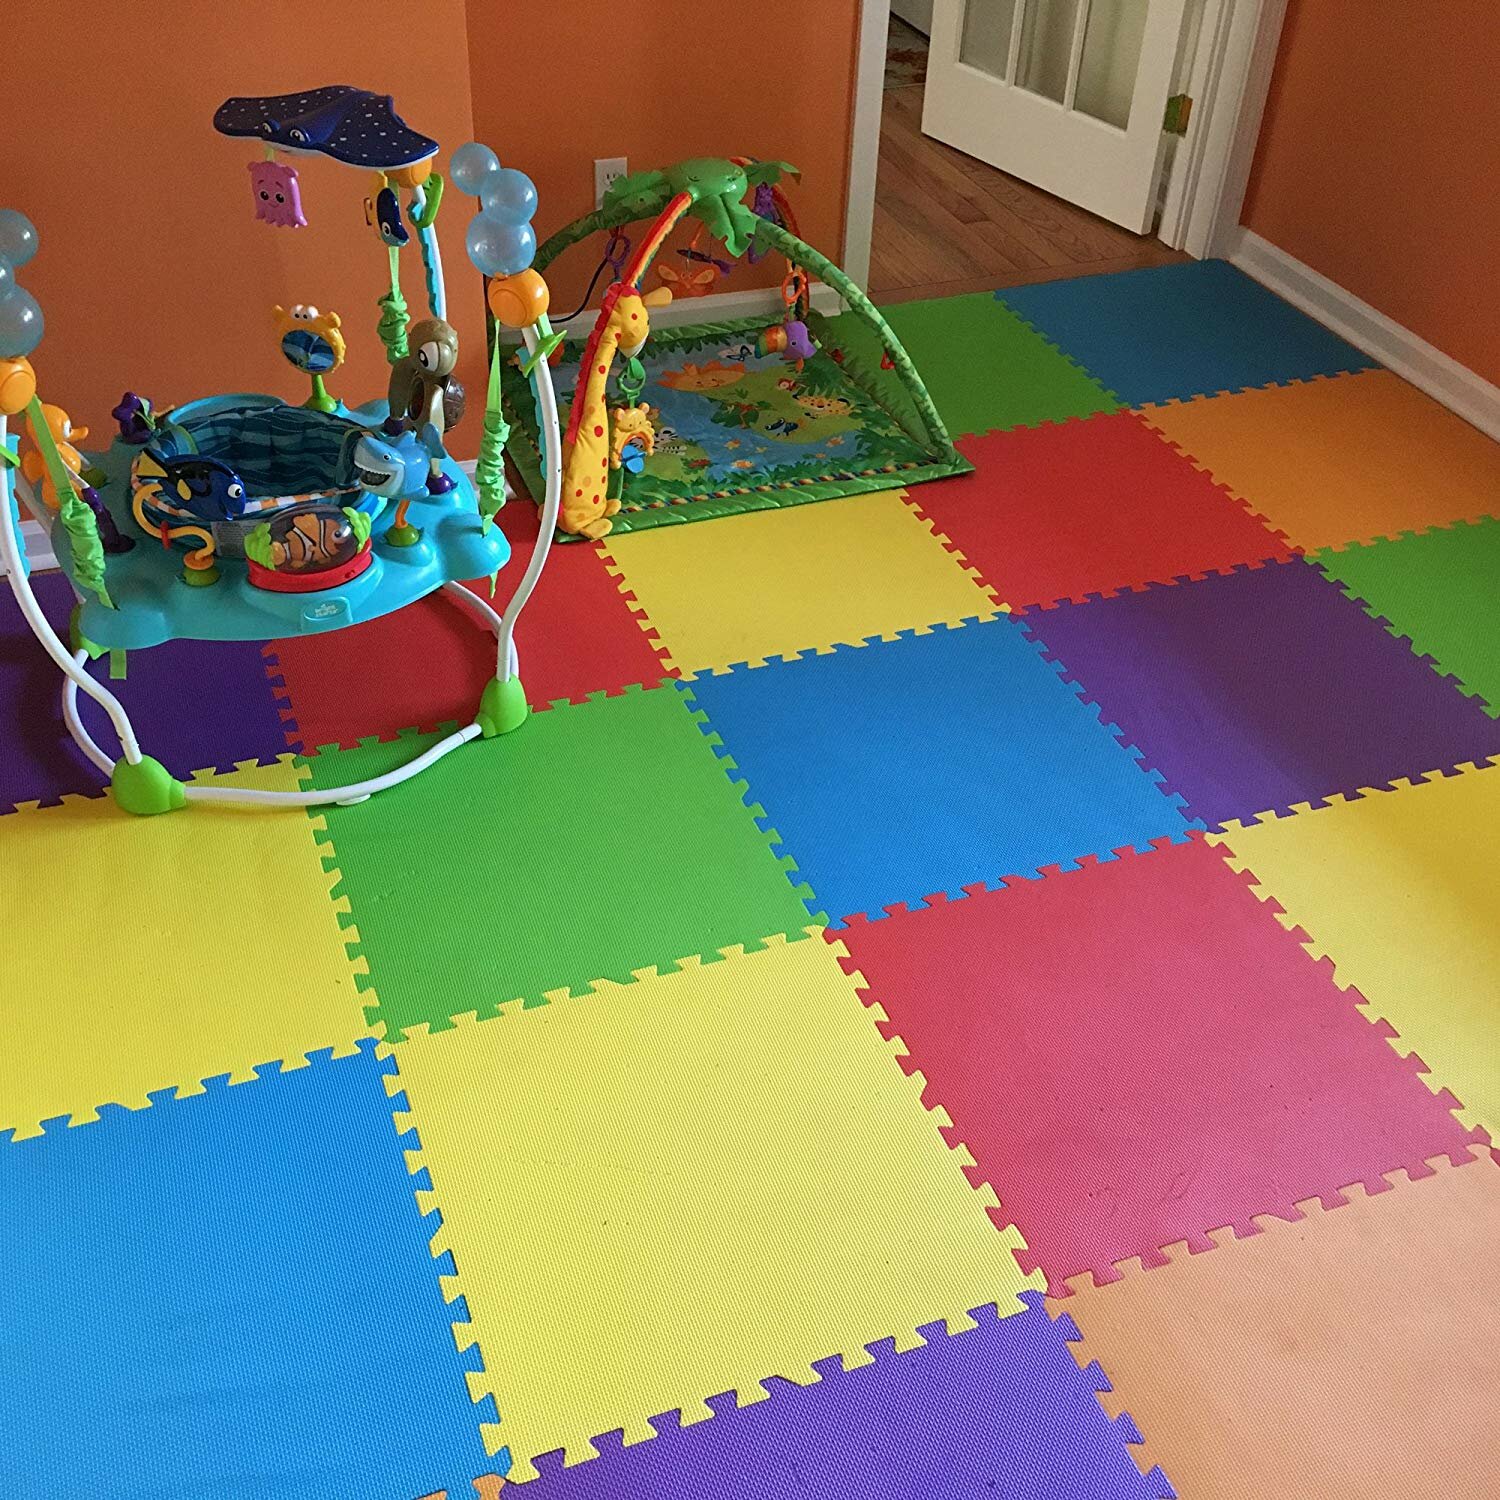 children jigsaw tiles playmat .Size 1.62 Sqm Baby play mat yellow-green-red-050809g18 MSHEN–18PCS Foam Play Mat Tiles|Interlocking Floor Mats for Children|Multicoloured Foam Floor Tiles